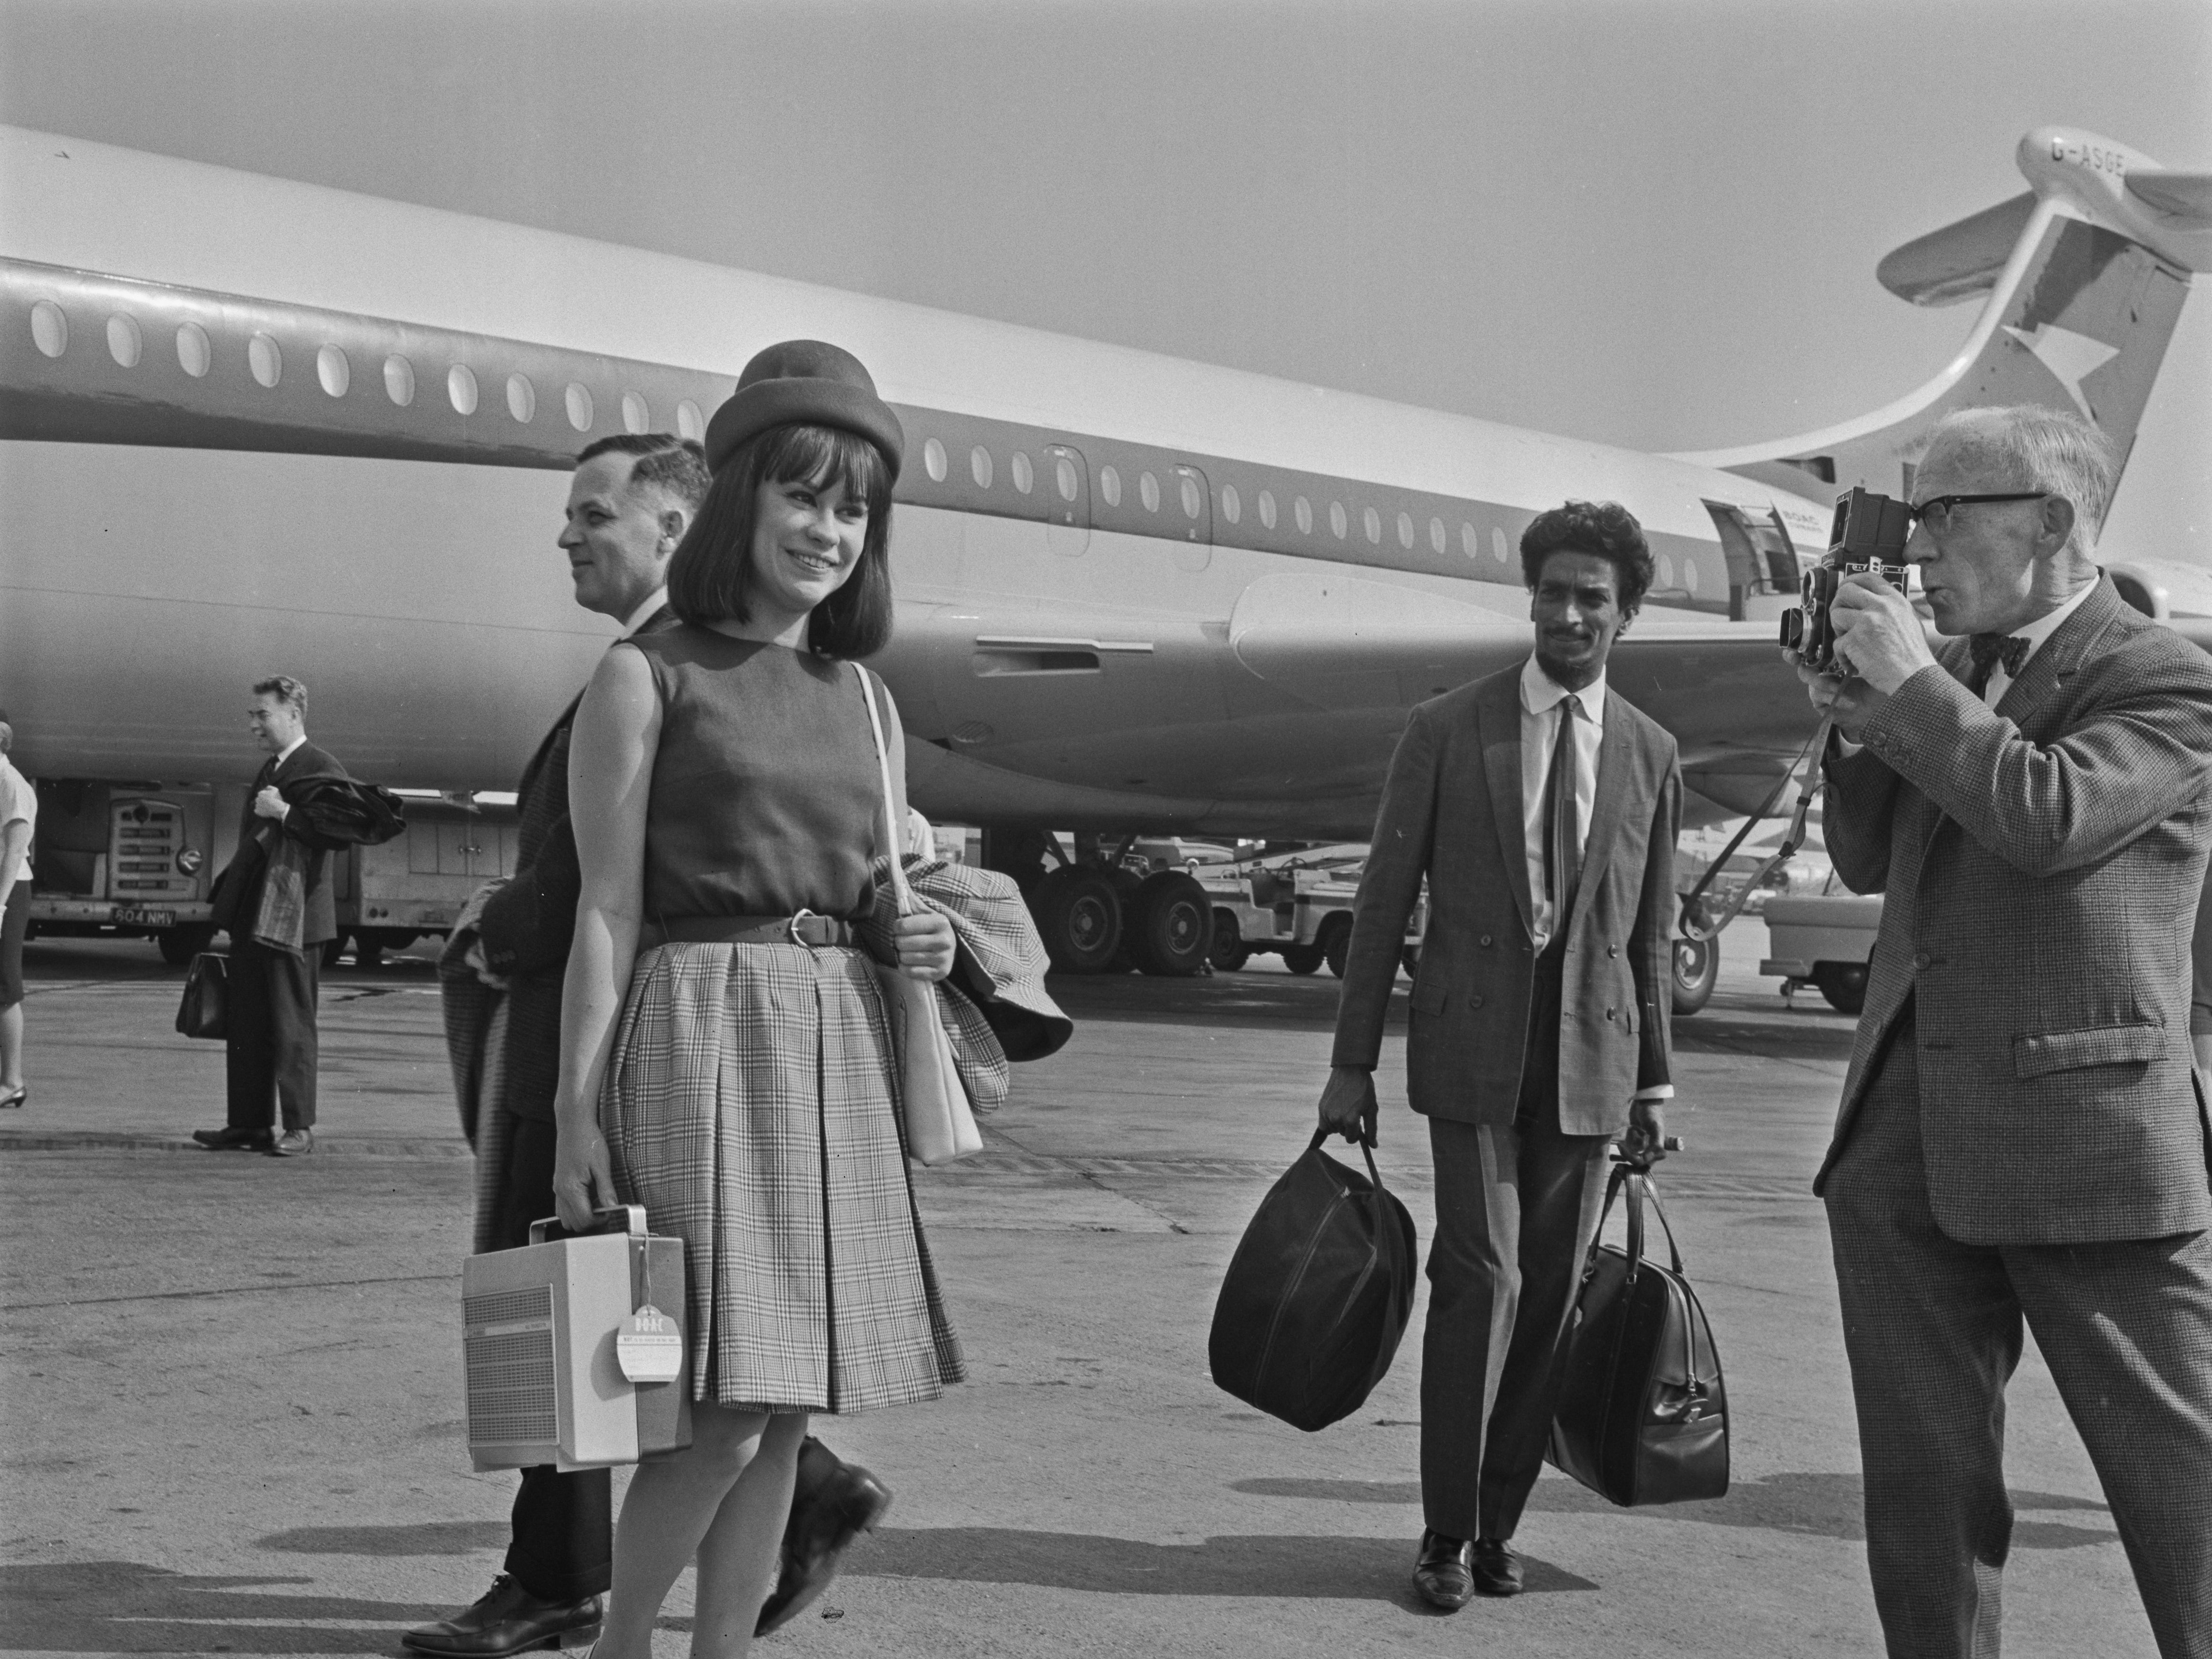 Gilberto llegando al aeropuerto Heathrow (entonces aeropuerto de Londres) en junio de 1965